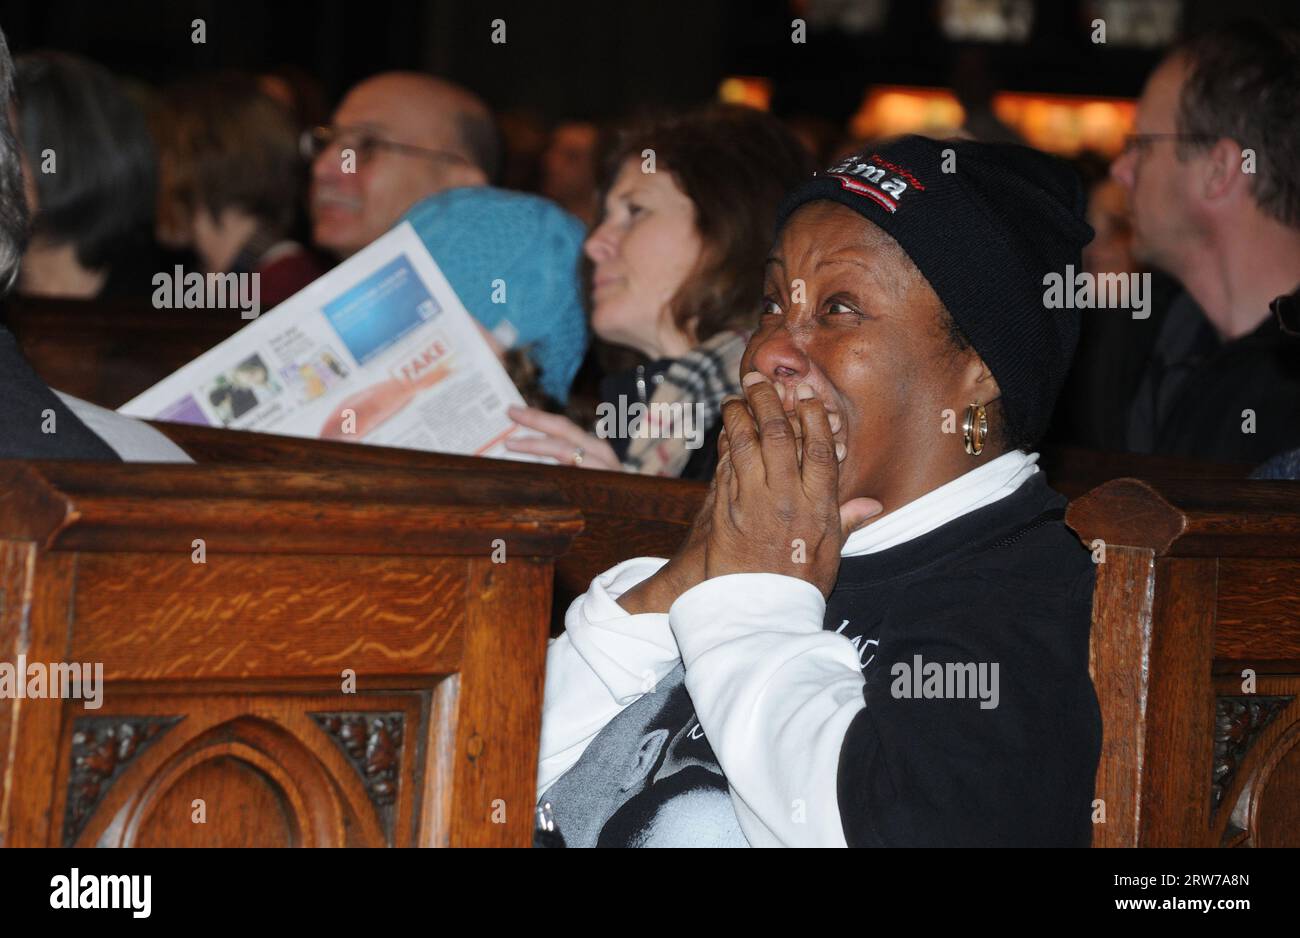 Alla Trinity Church di Manhattan, una donna guardò l'inaugurazione televisiva di Barack Obama come presidente degli Stati Uniti e fu sopraffatta dall'emozione. Foto Stock